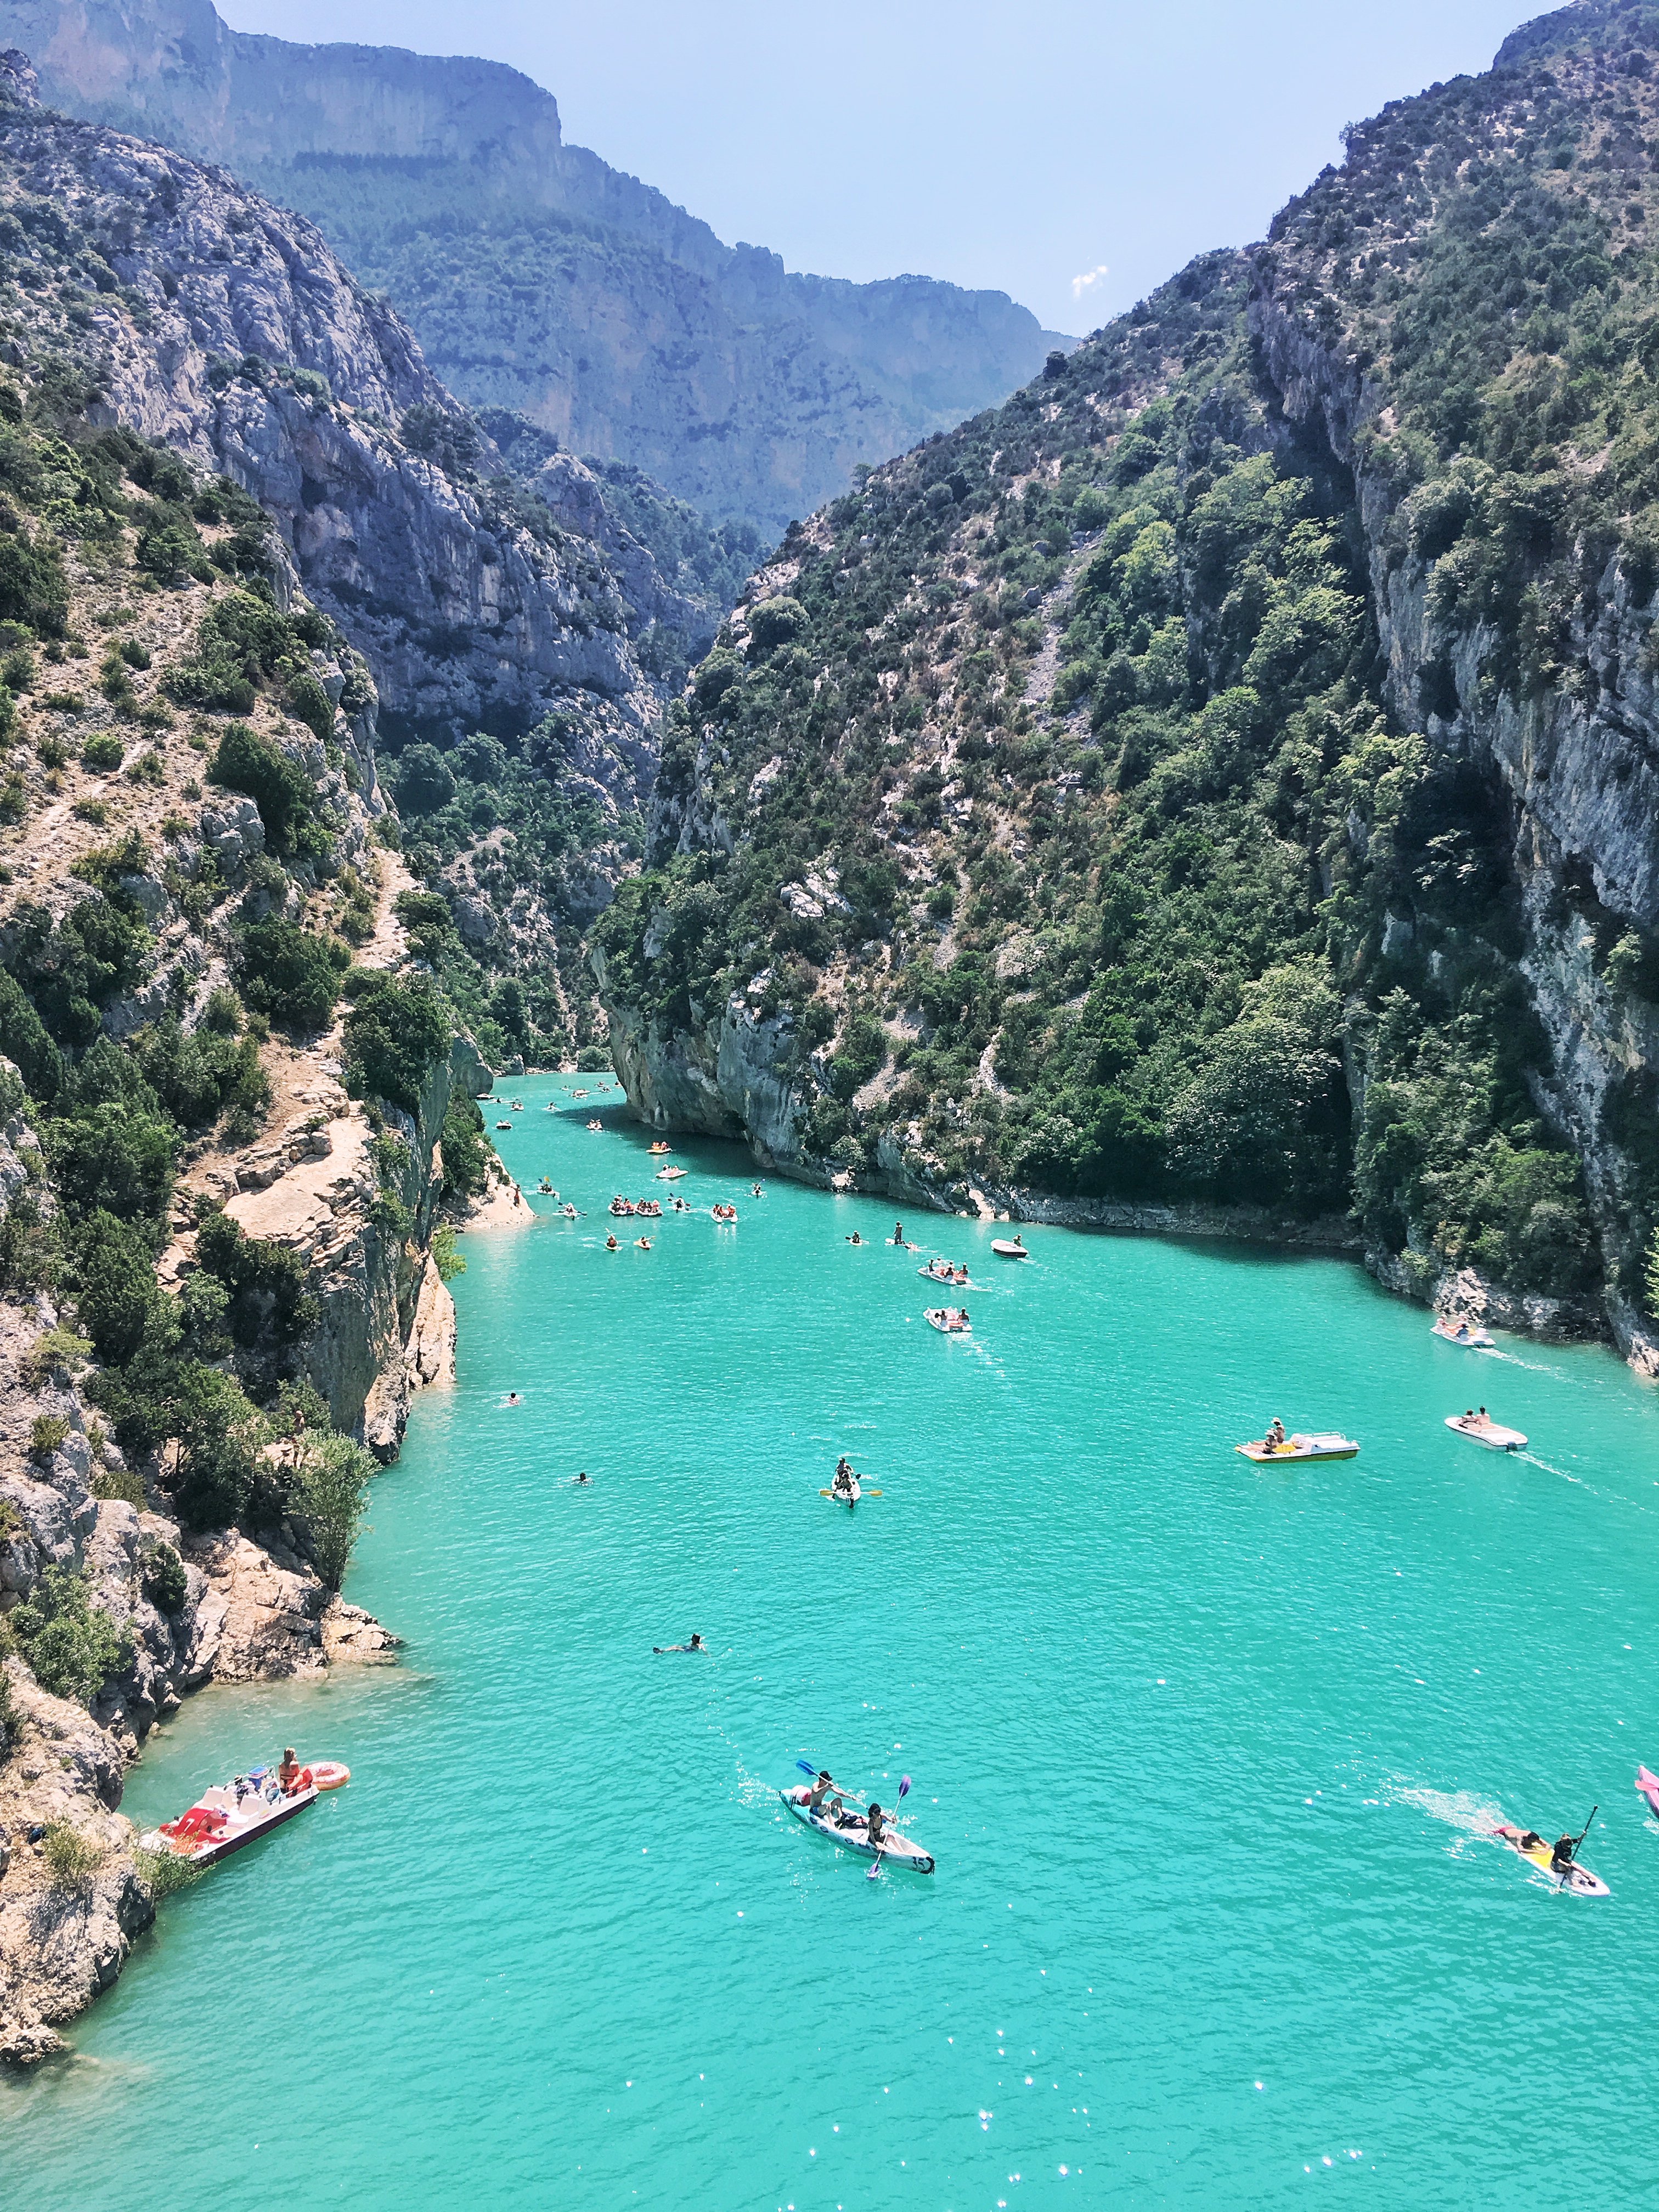 Turqoise blue waters of Gorges du Verdon